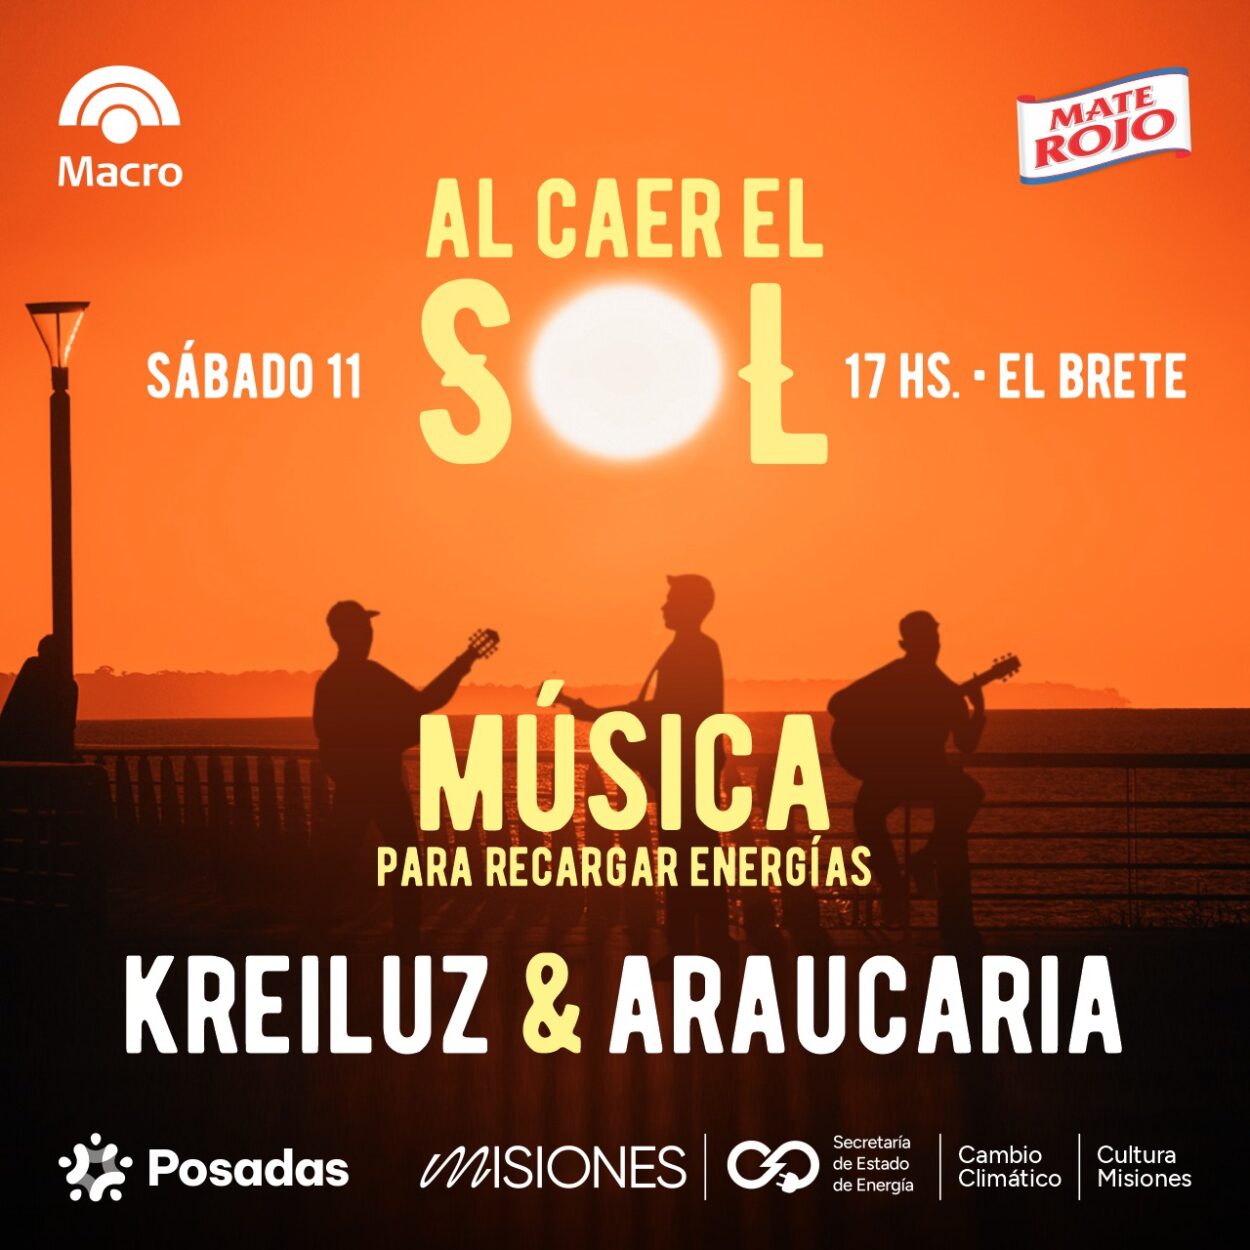 Araucaria y Kreiluz aportarán su energía musical este sábado en El Brete imagen-58